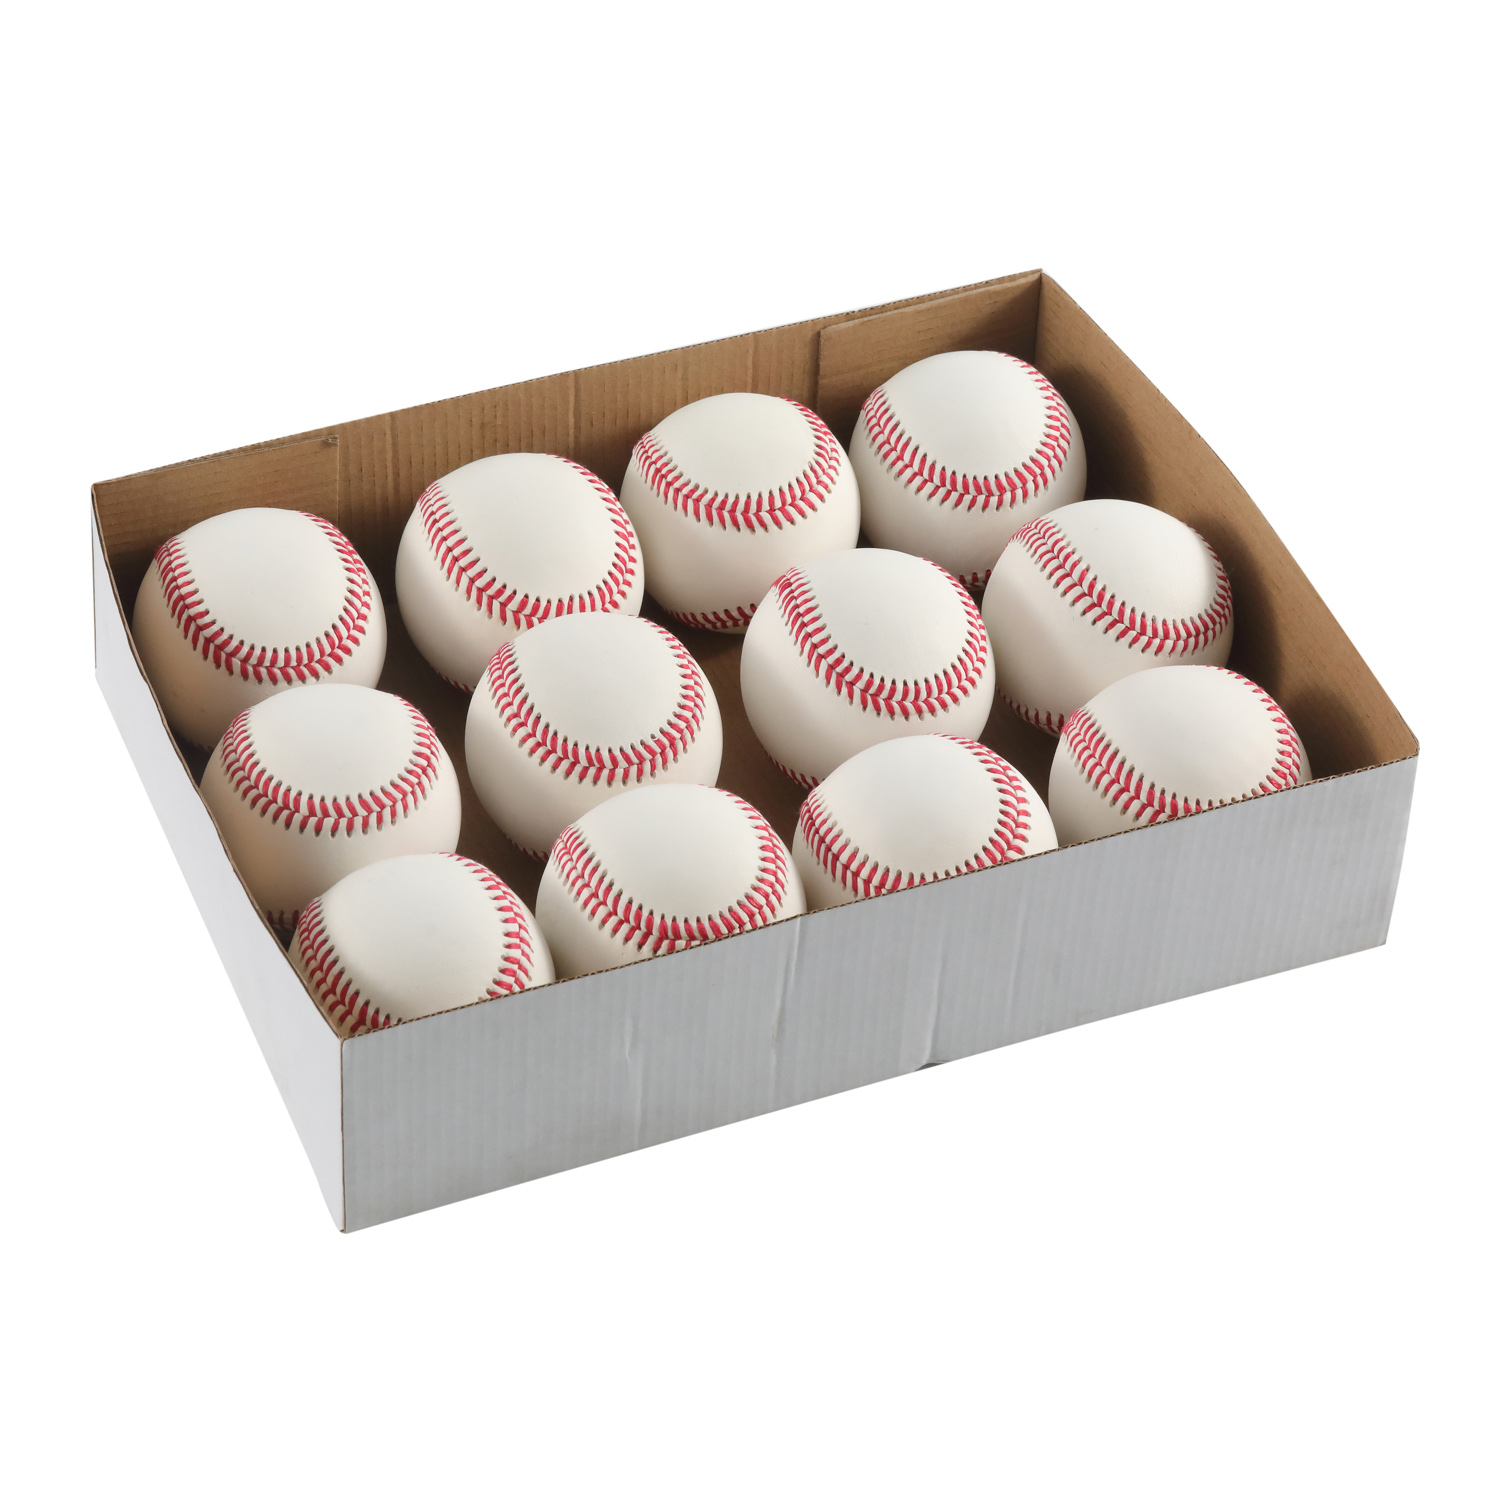 9 'cubierta de cuero de vaca de grano completo Major Little League College oficial juego profesional pelota de béisbol de cuero